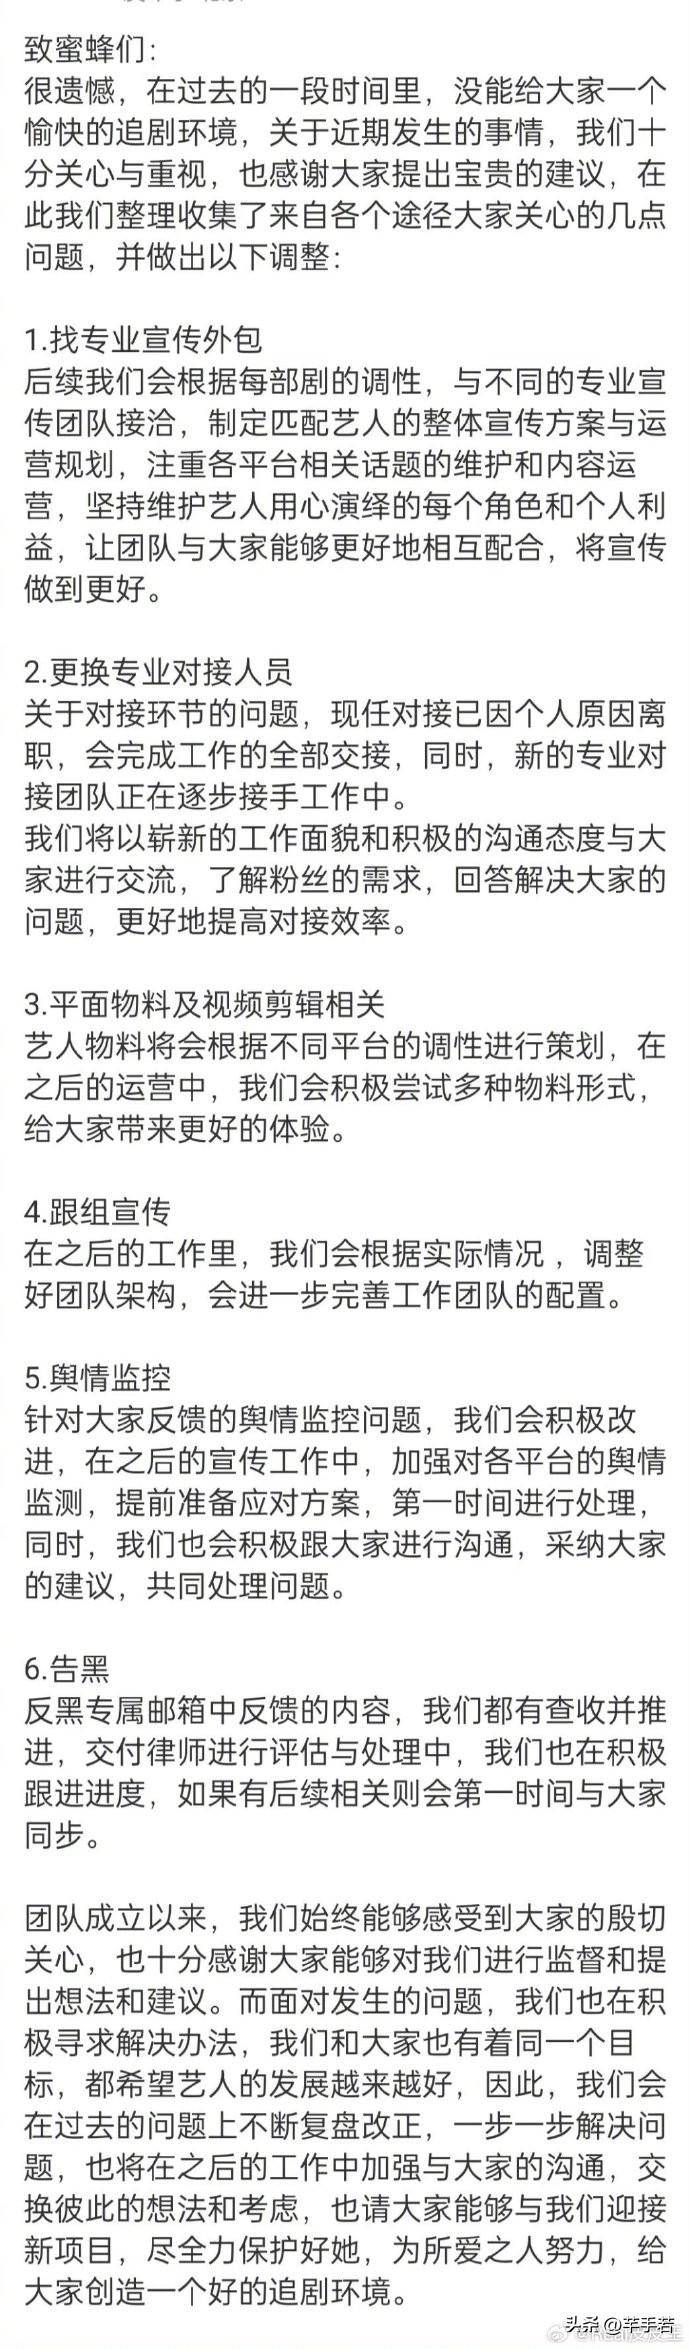 杨幂粉丝抗议工作室 不满引发多个粉丝站暂停运营